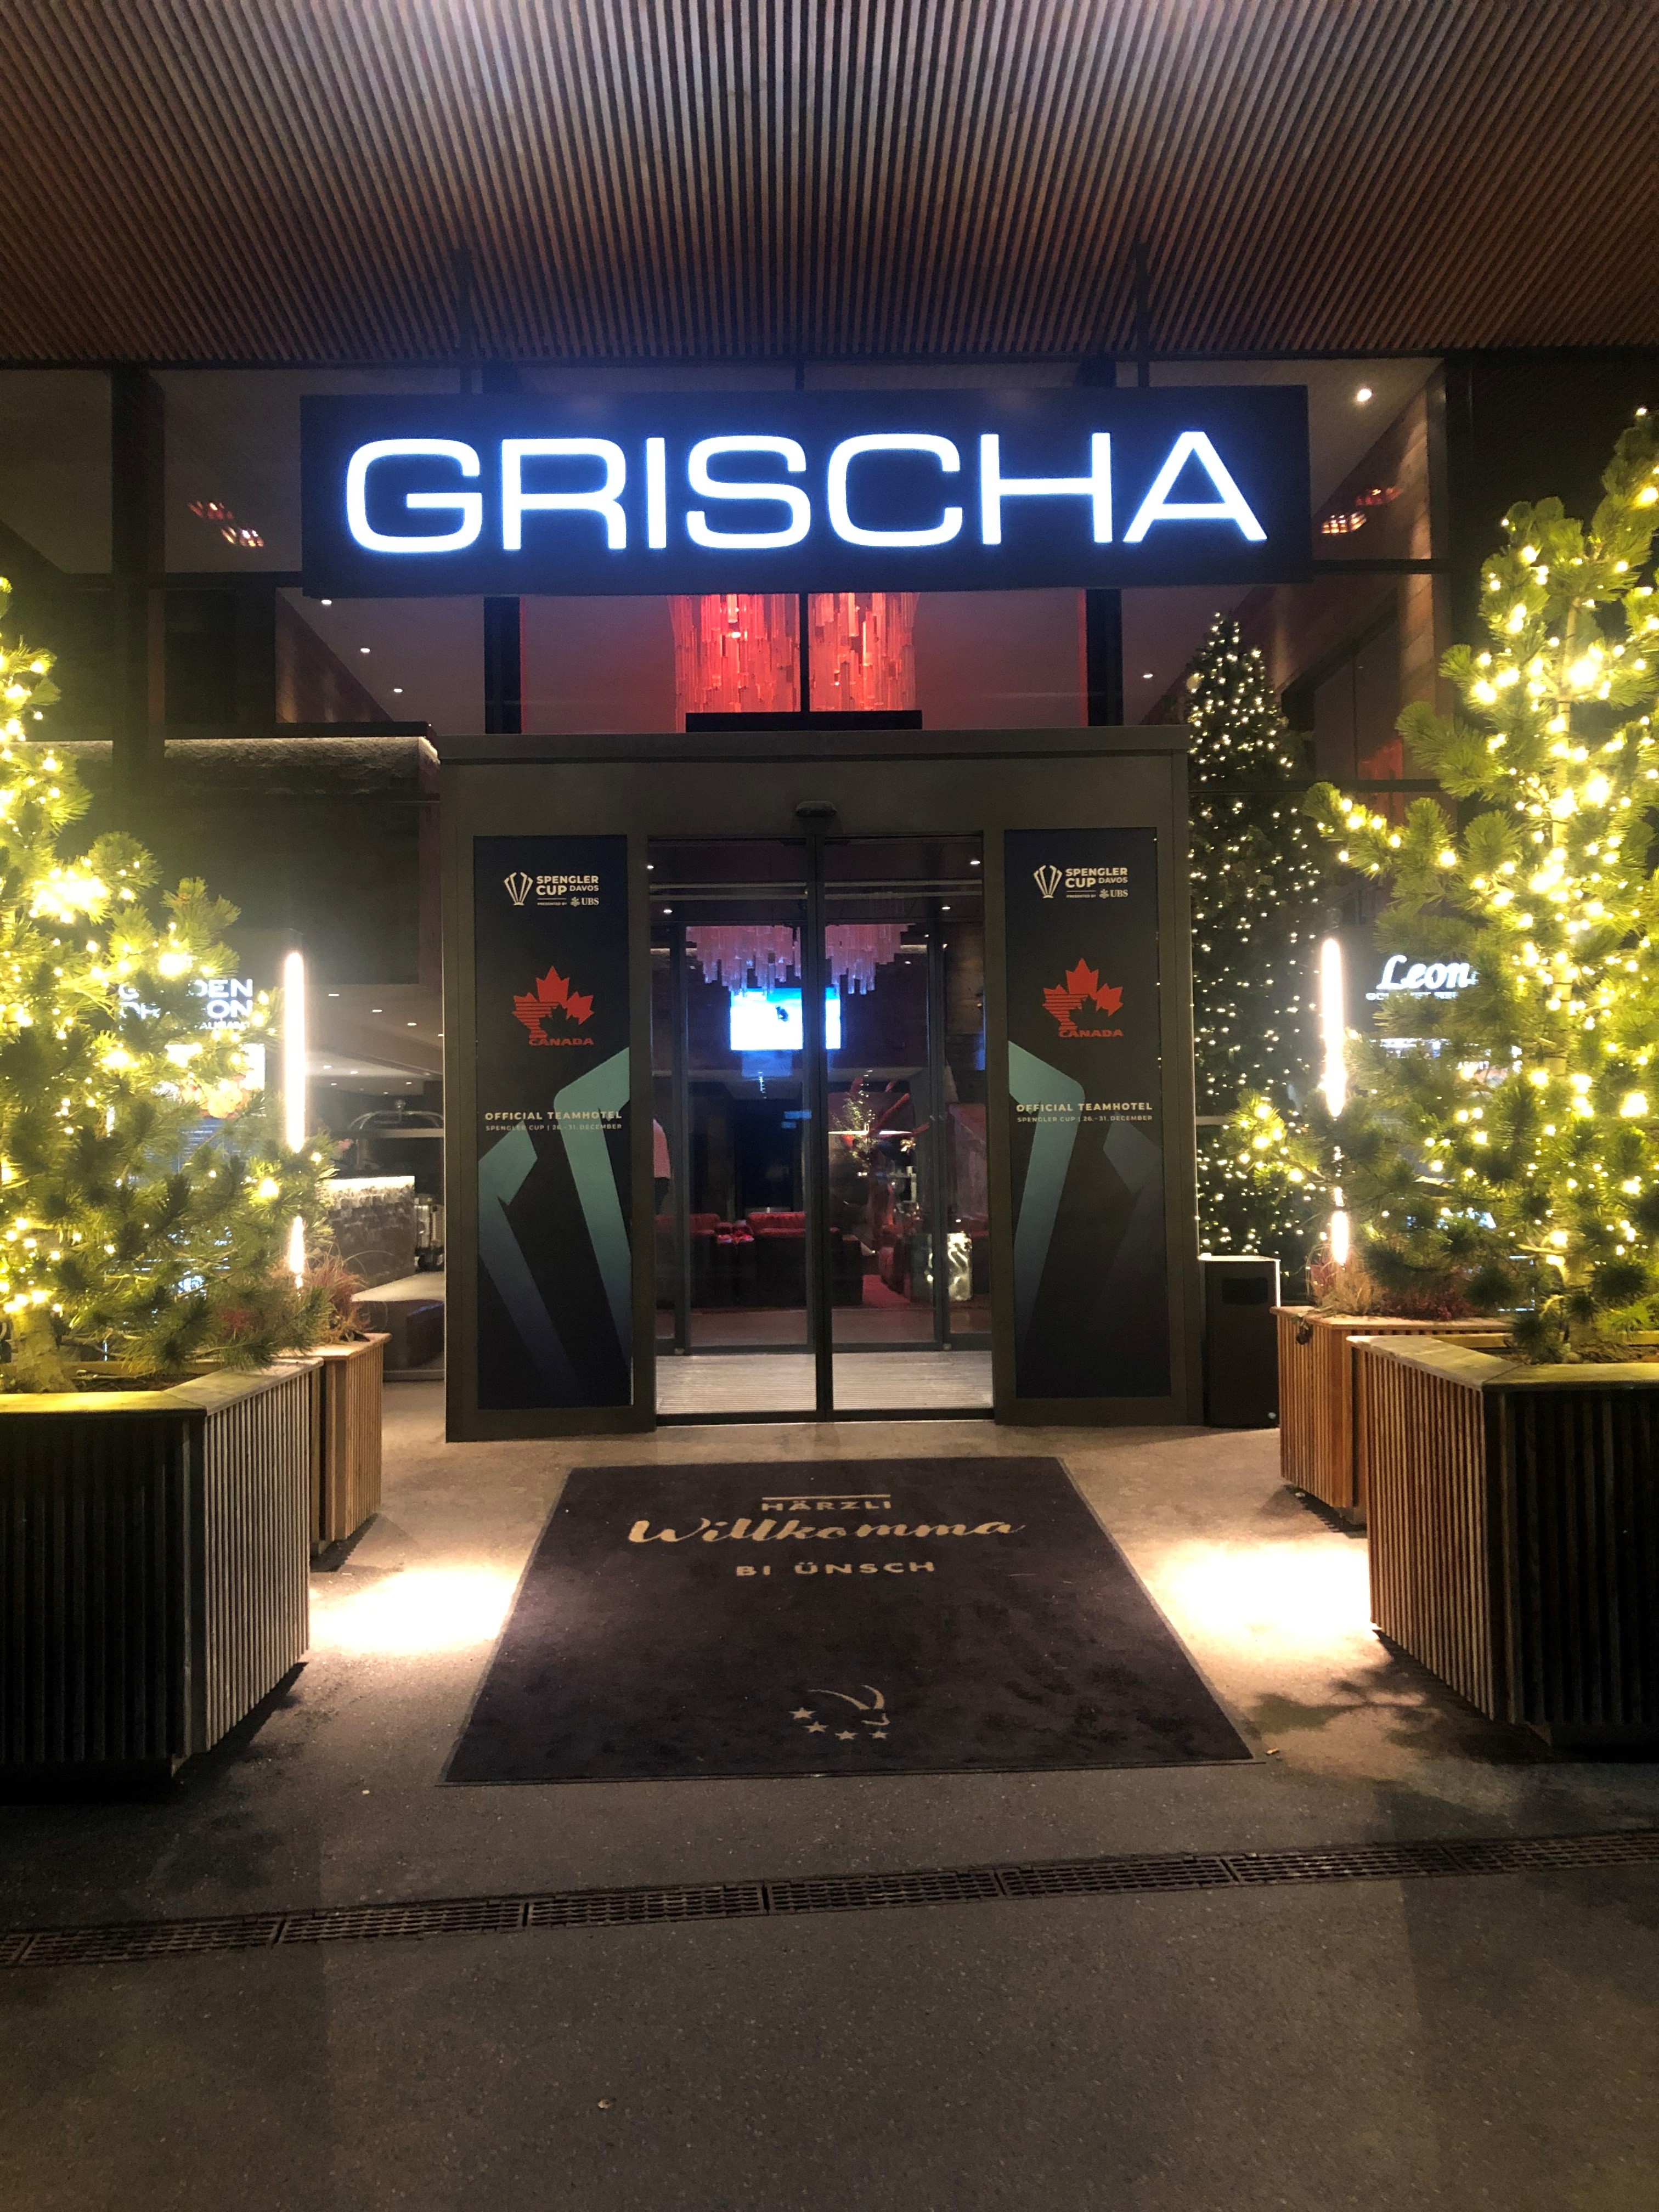 Hotel Grischajpg